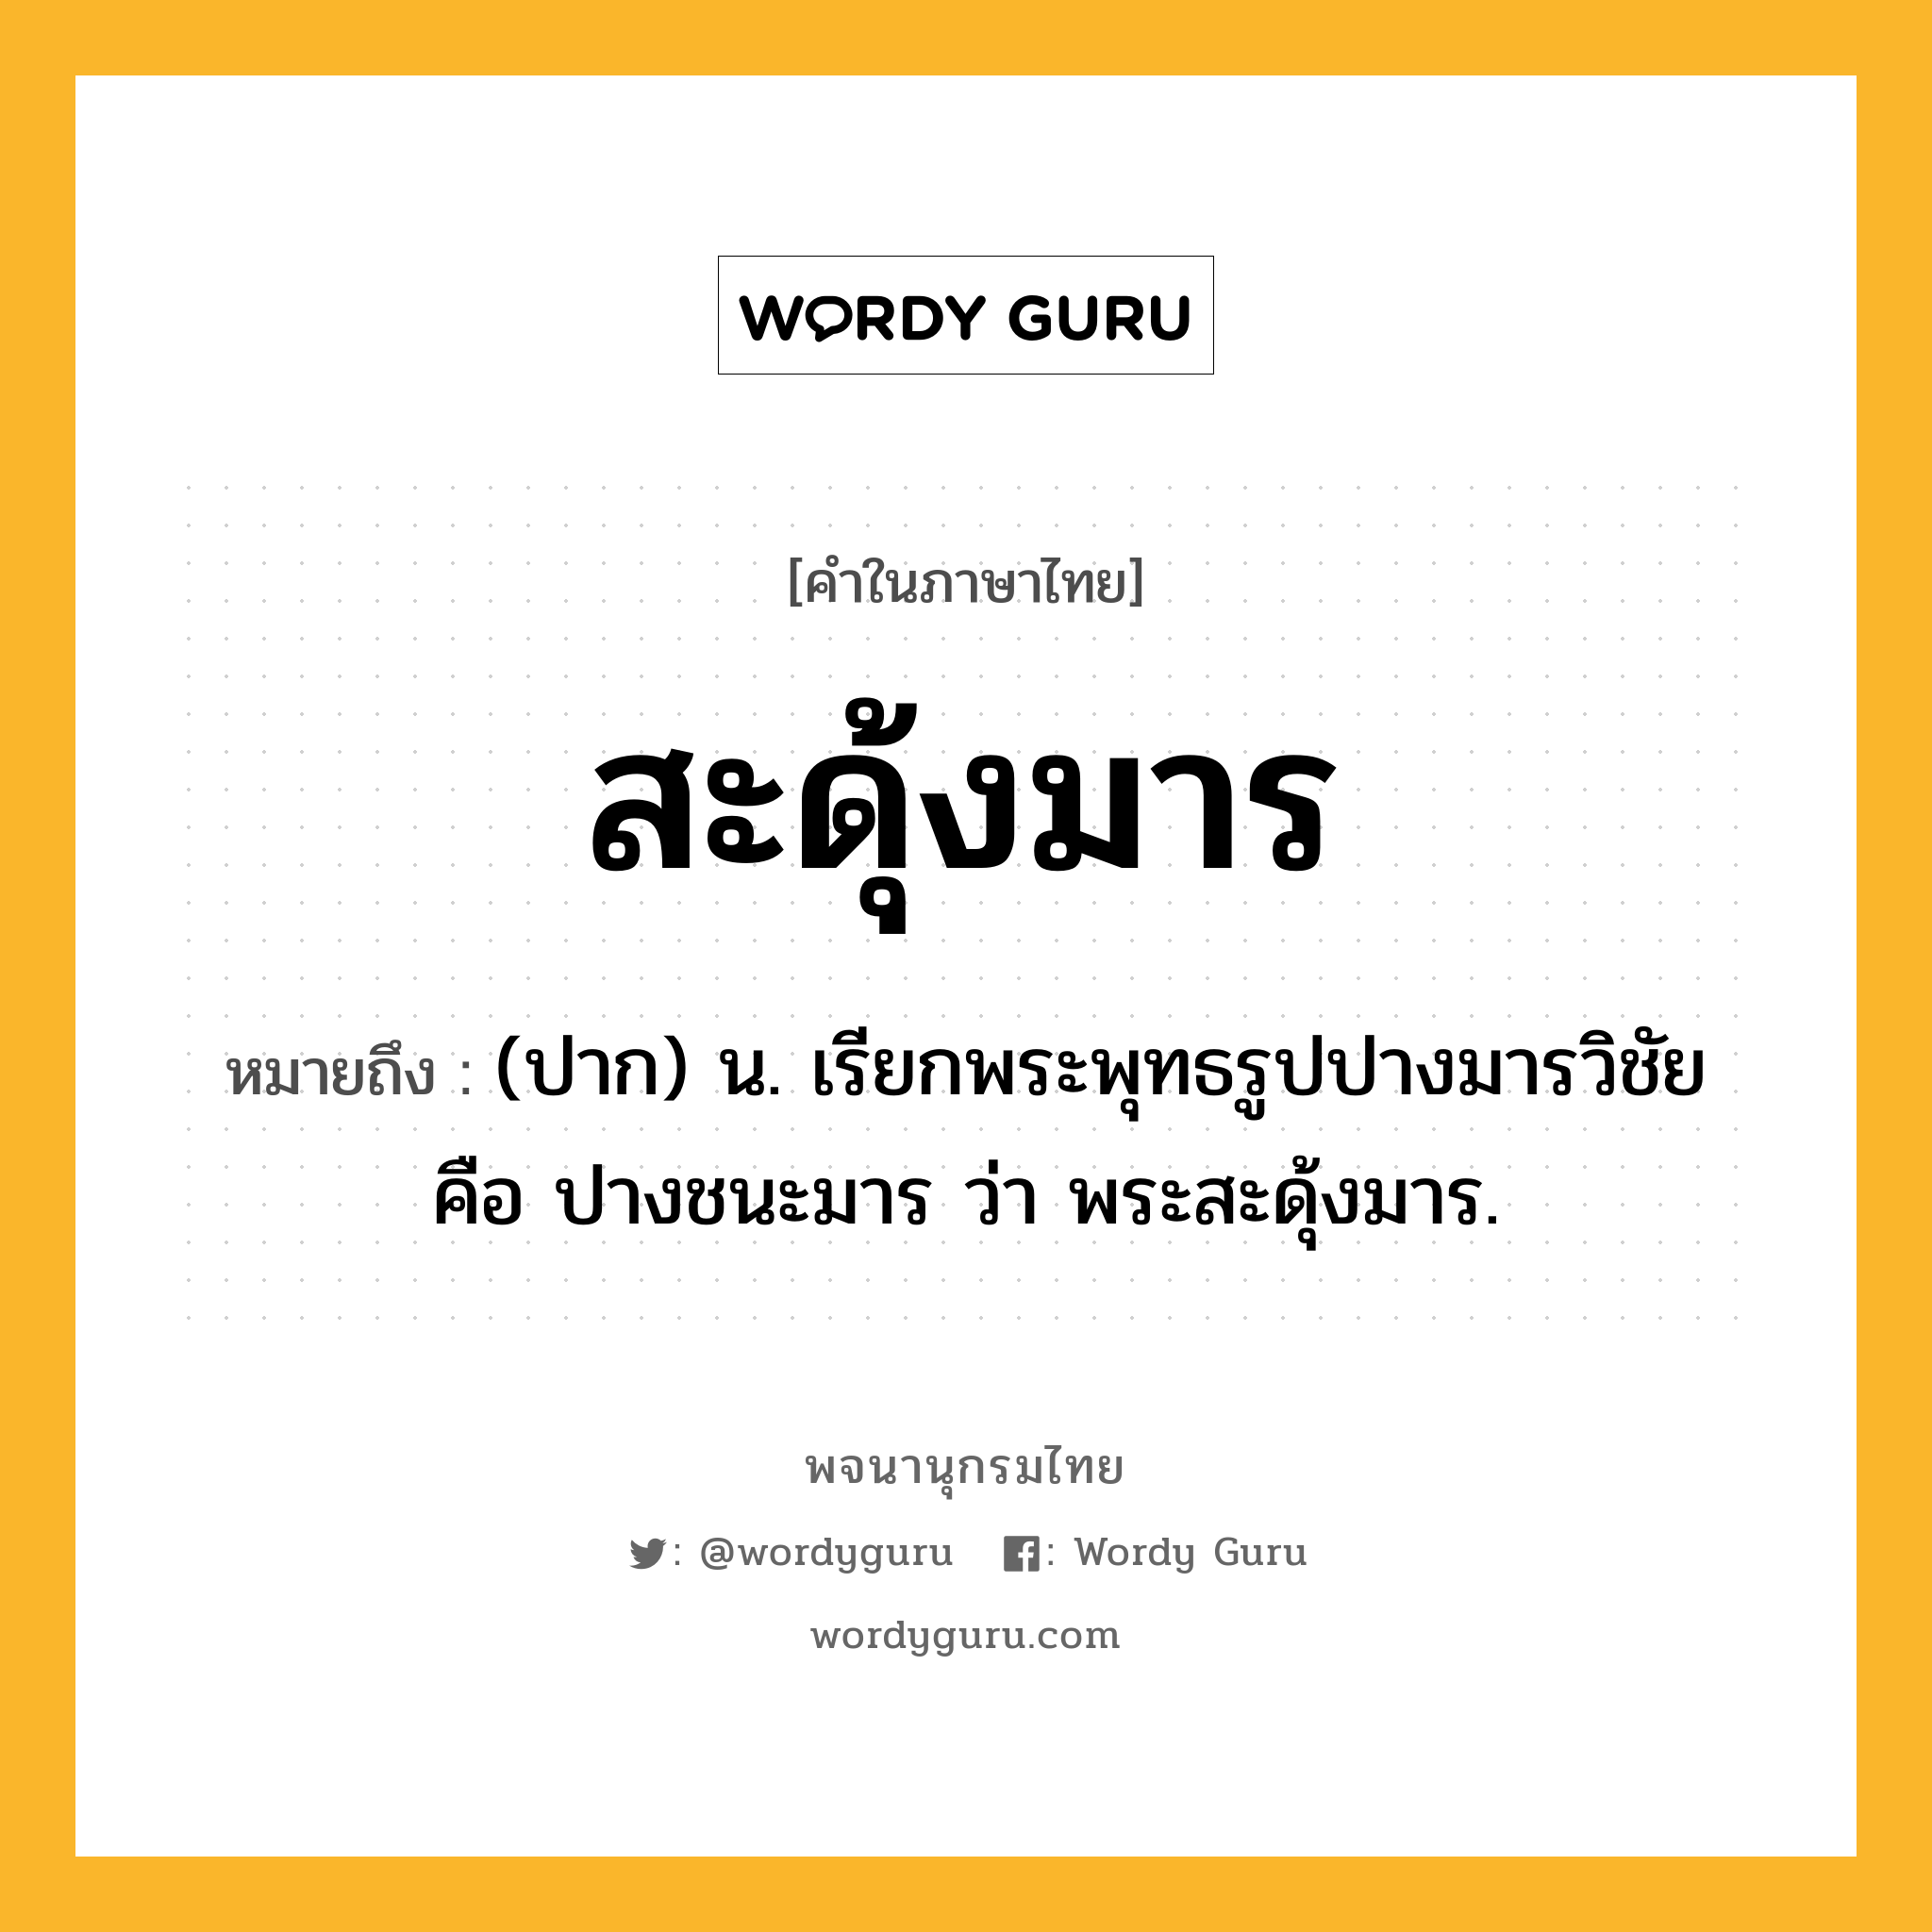 สะดุ้งมาร ความหมาย หมายถึงอะไร?, คำในภาษาไทย สะดุ้งมาร หมายถึง (ปาก) น. เรียกพระพุทธรูปปางมารวิชัย คือ ปางชนะมาร ว่า พระสะดุ้งมาร.